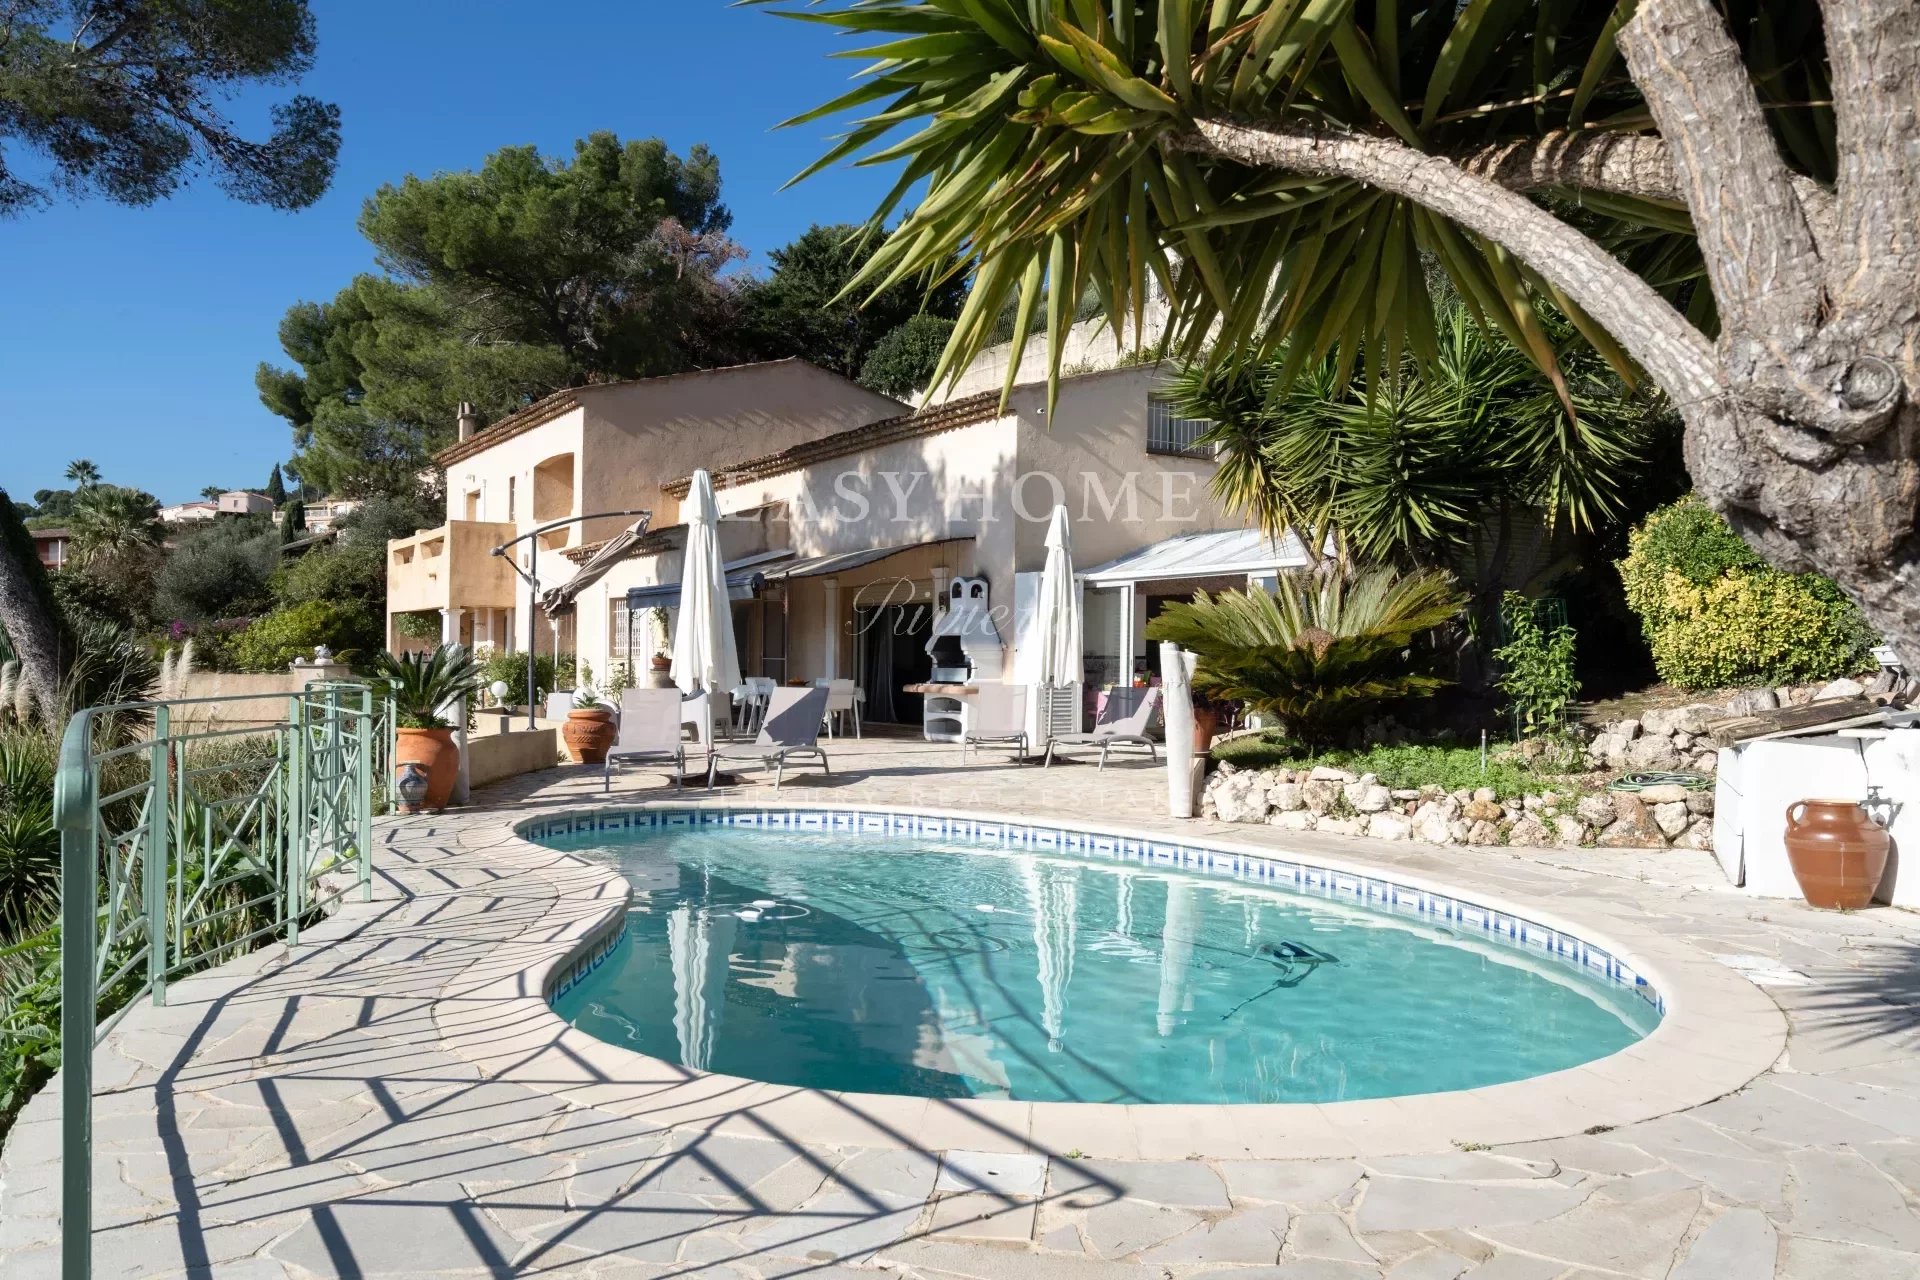 Vente Maison 285m² à Le Golfe Juan (06220) - Easy Home Riviera